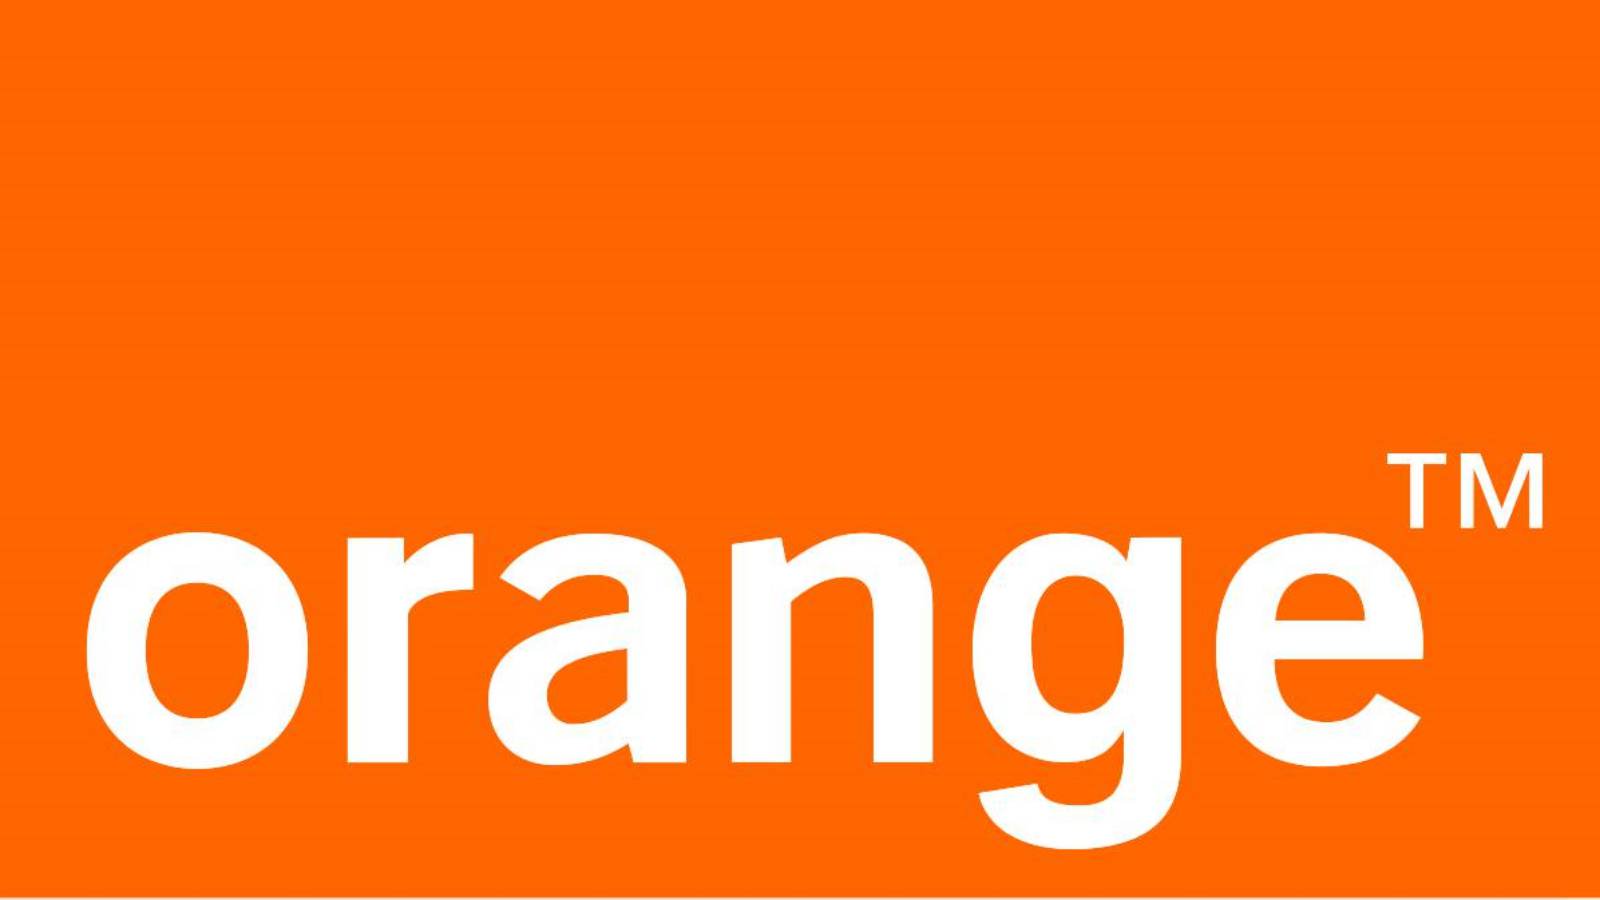 telefoni arancioni, prezzo ridotto, 1 maggio